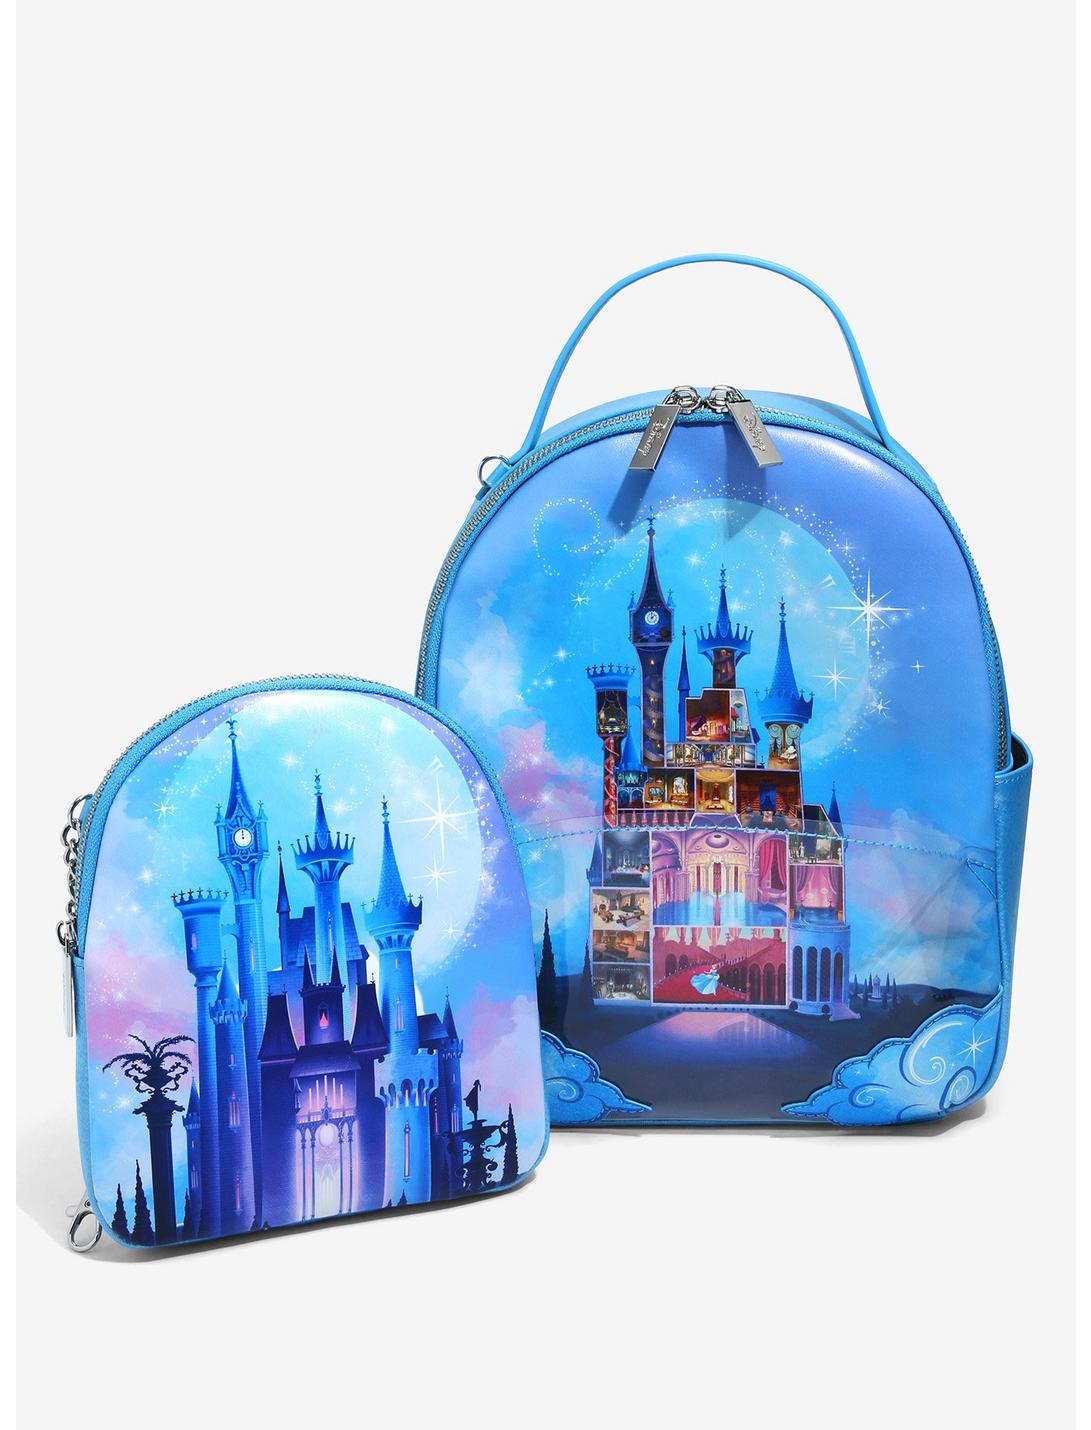 Danielle Nicole Disney Cinderella Castle Bag - Light Blue